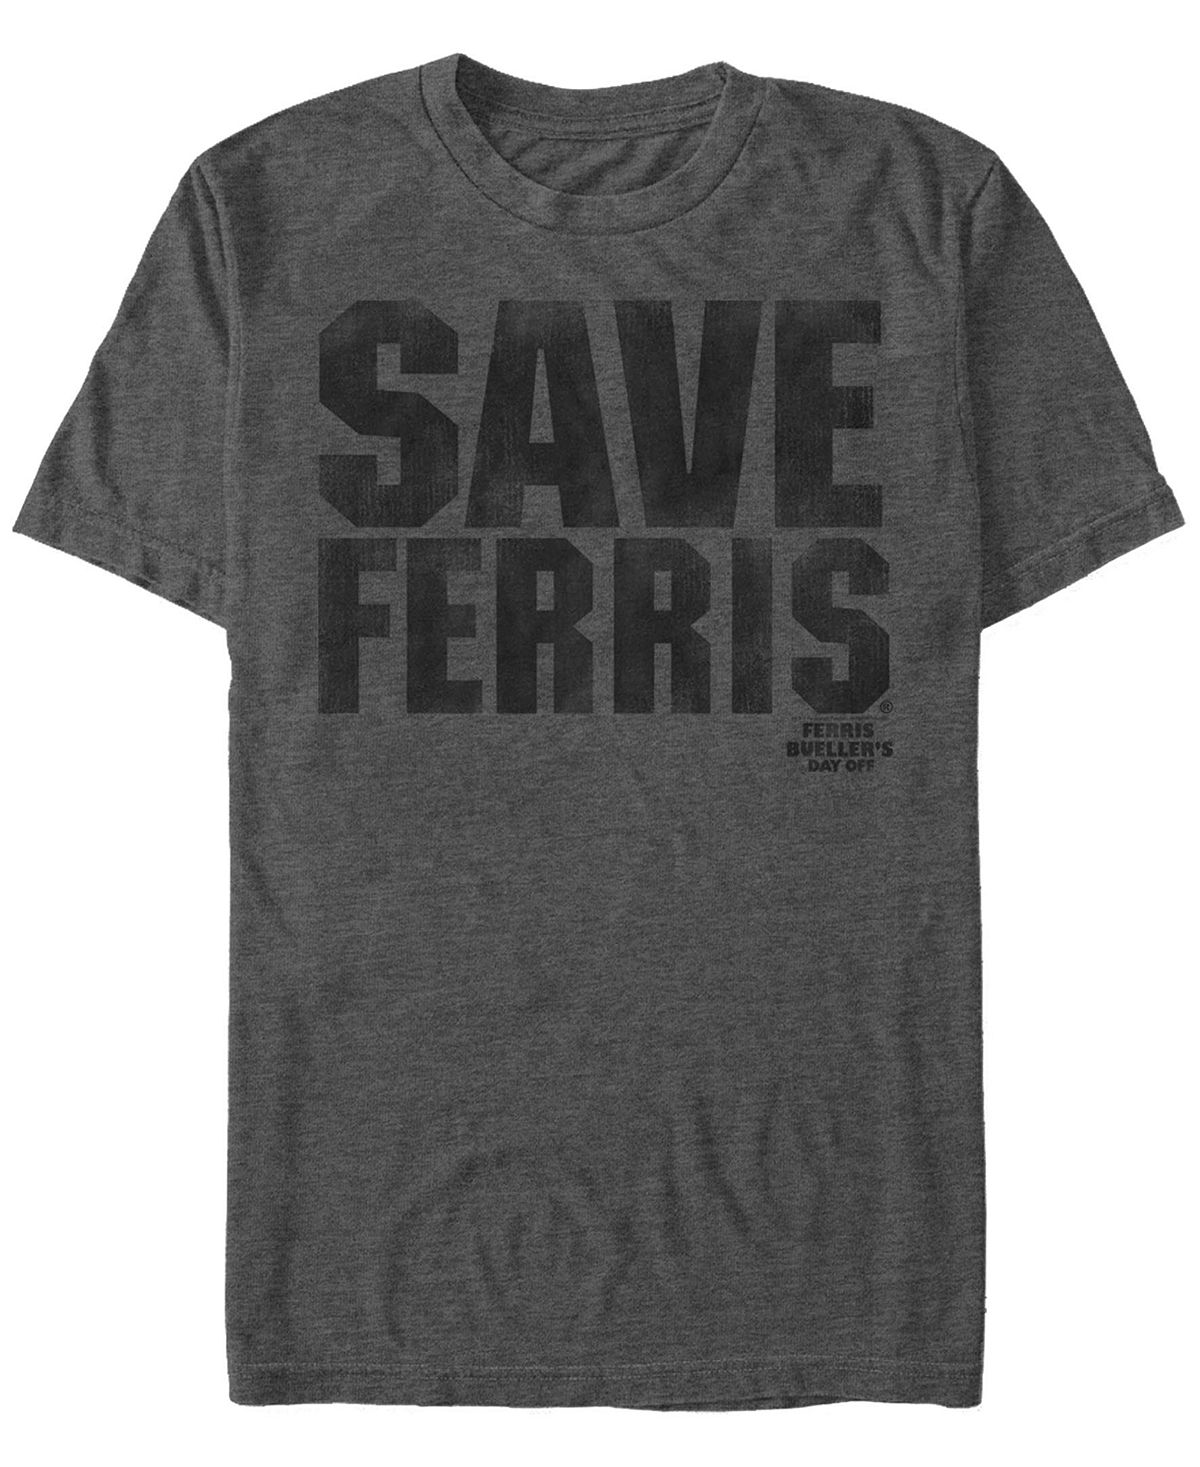 Мужская футболка с коротким рукавом save ferris text с эффектом потертости Fifth Sun, темно-серый